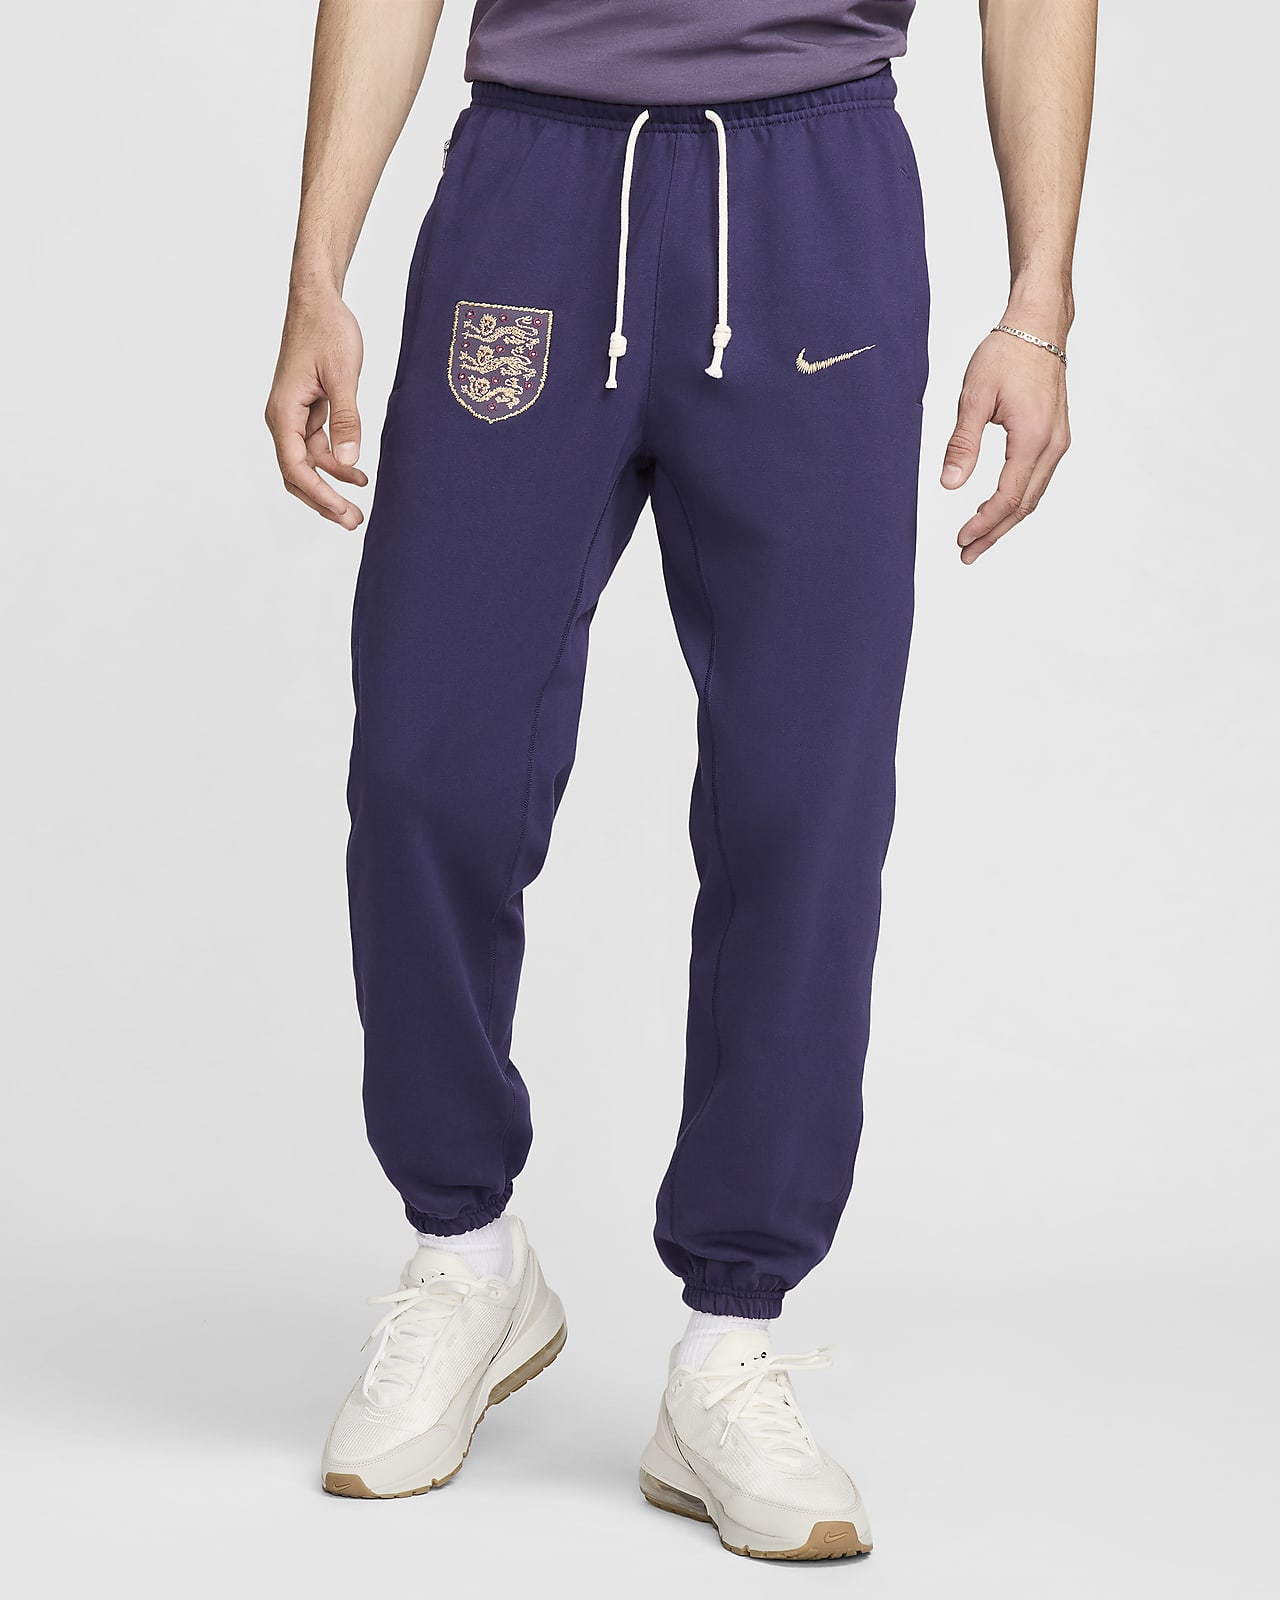 Fotbollsbyxor England Standard Issue Nike för män